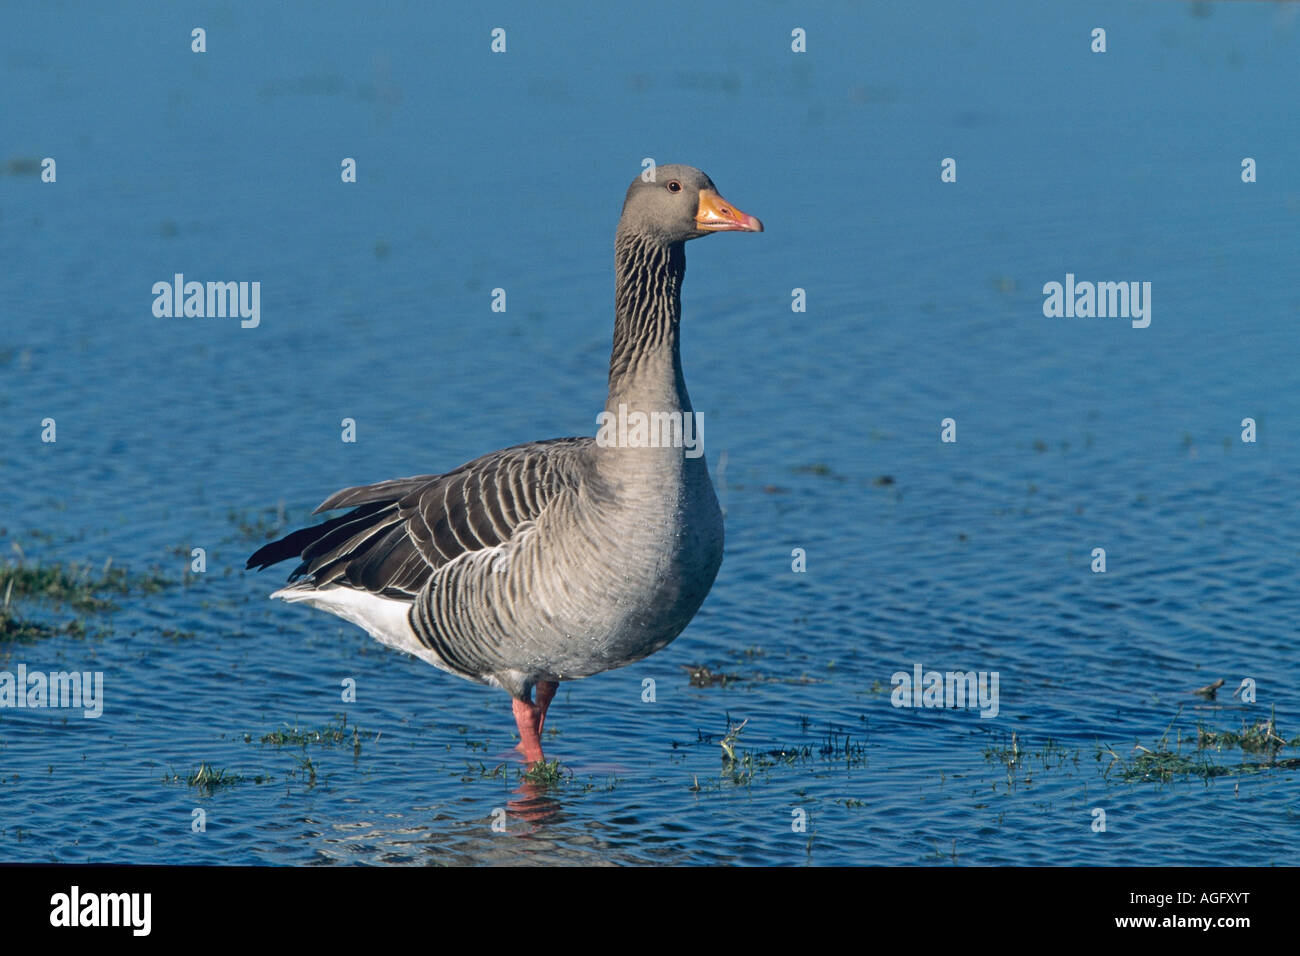 Graugans Anser anser in seichtem Wasser stehend Greylag Goose standing in shallow water Stock Photo